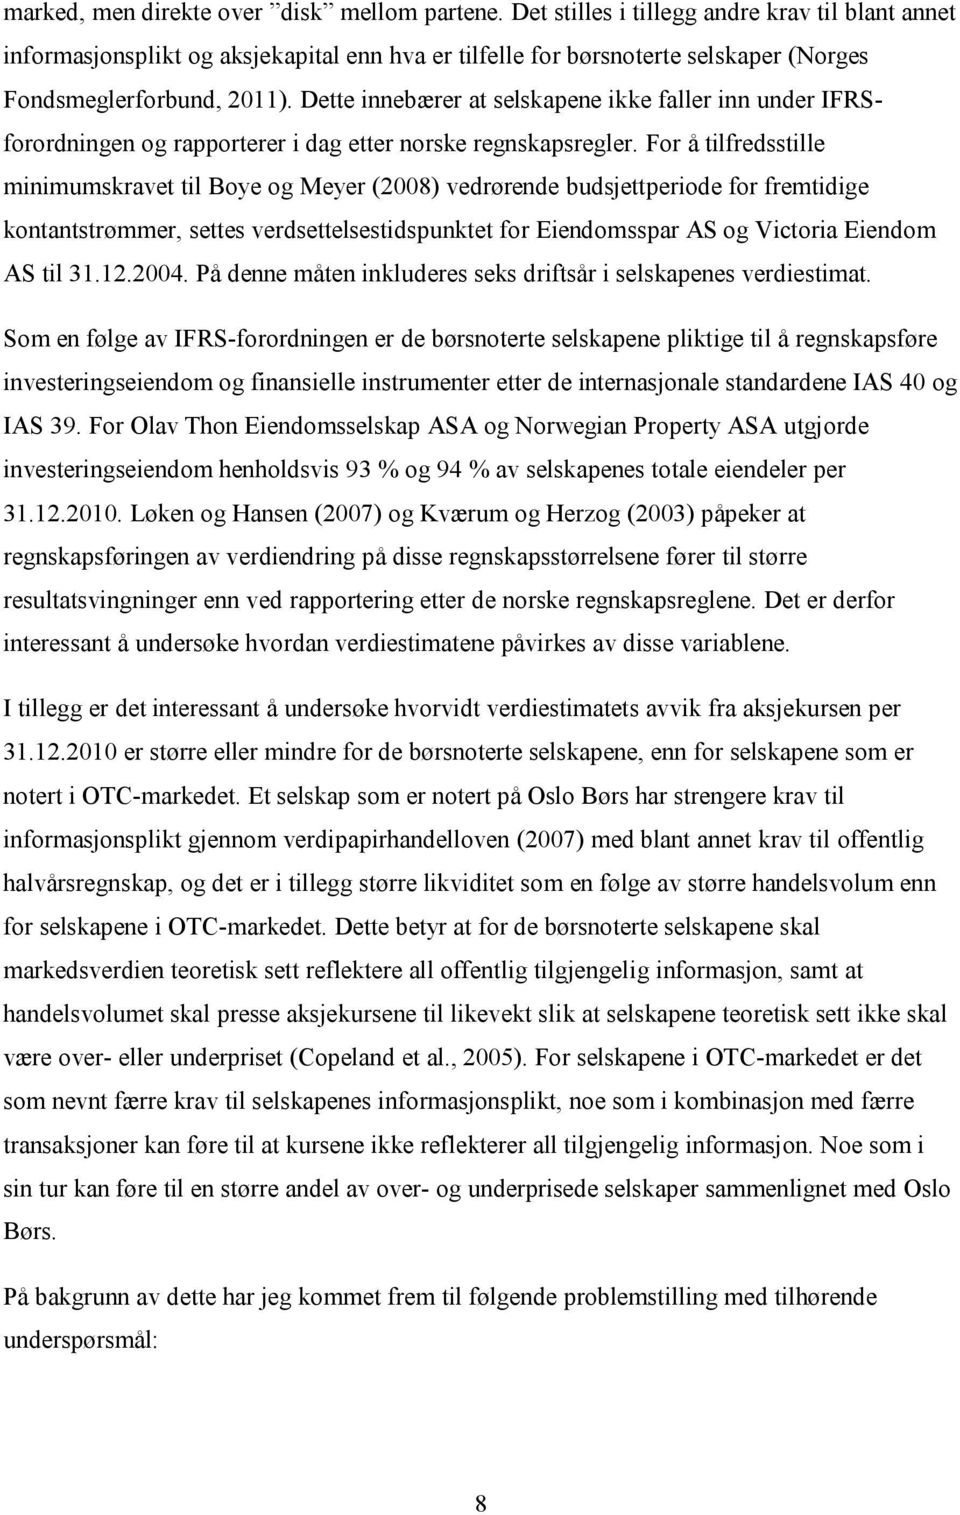 Dette innebærer at selskapene ikke faller inn under IFRSforordningen og rapporterer i dag etter norske regnskapsregler.